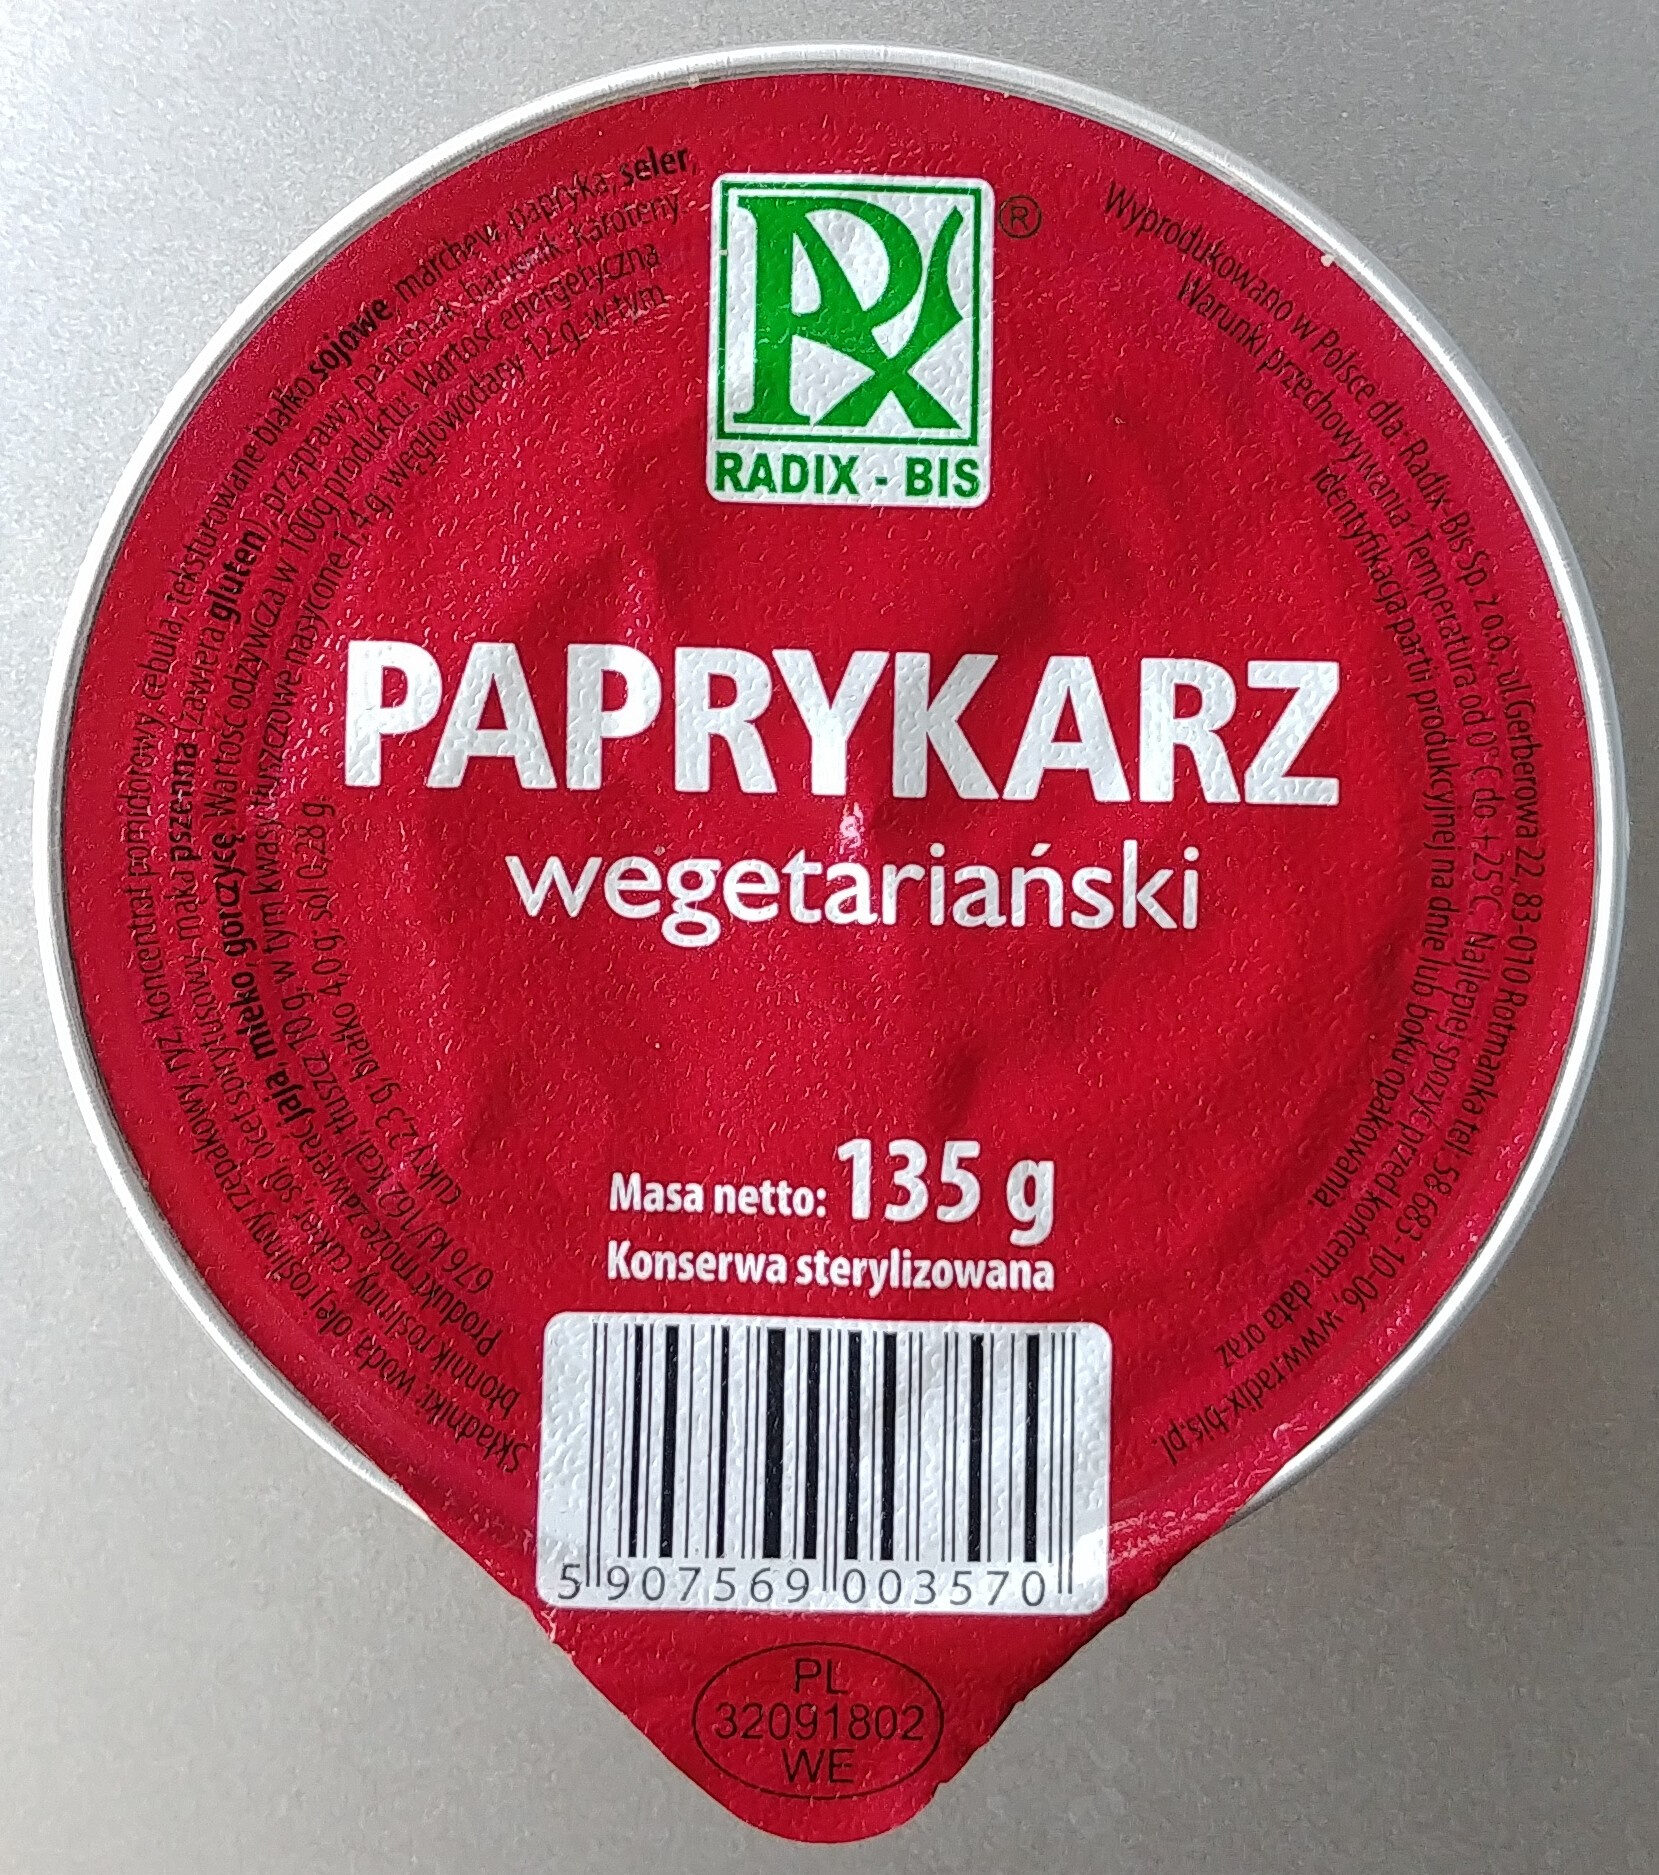 Paprykarz wegetariański. - Product - pl